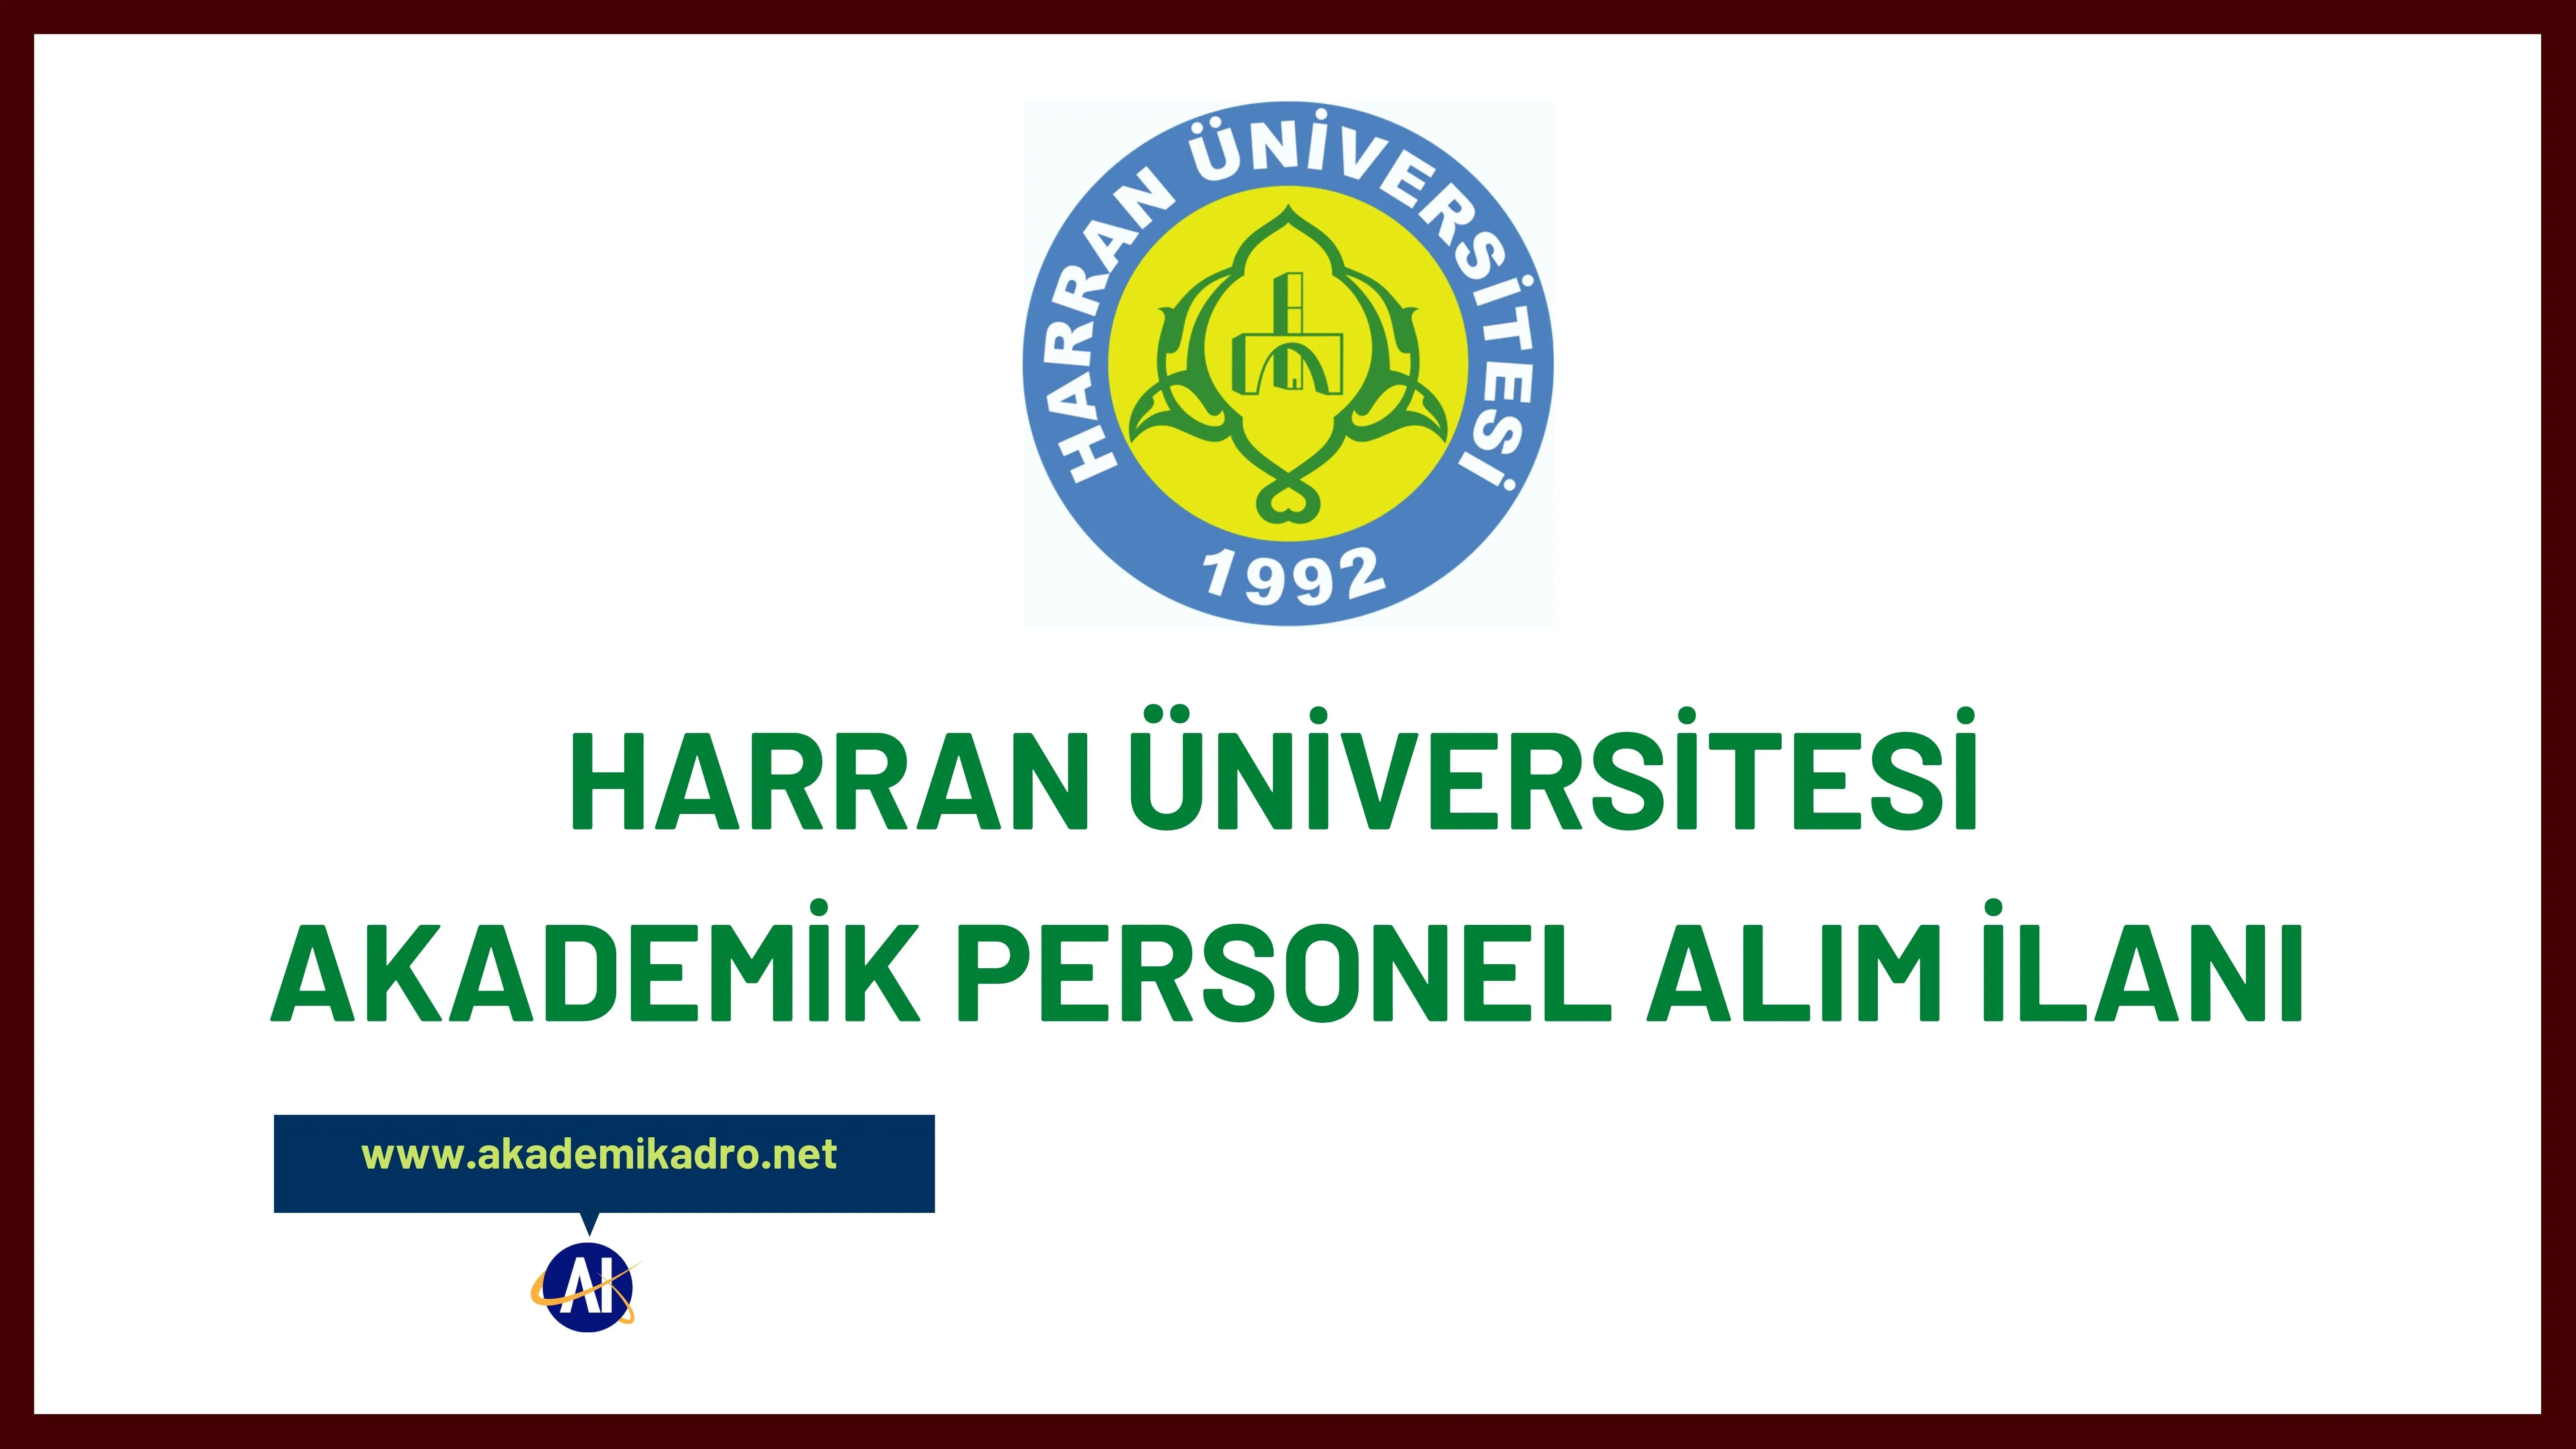 Harran Üniversitesi 8 Profesör, 7 Doçent ve 35 Doktor öğretim üyesi alacaktır.